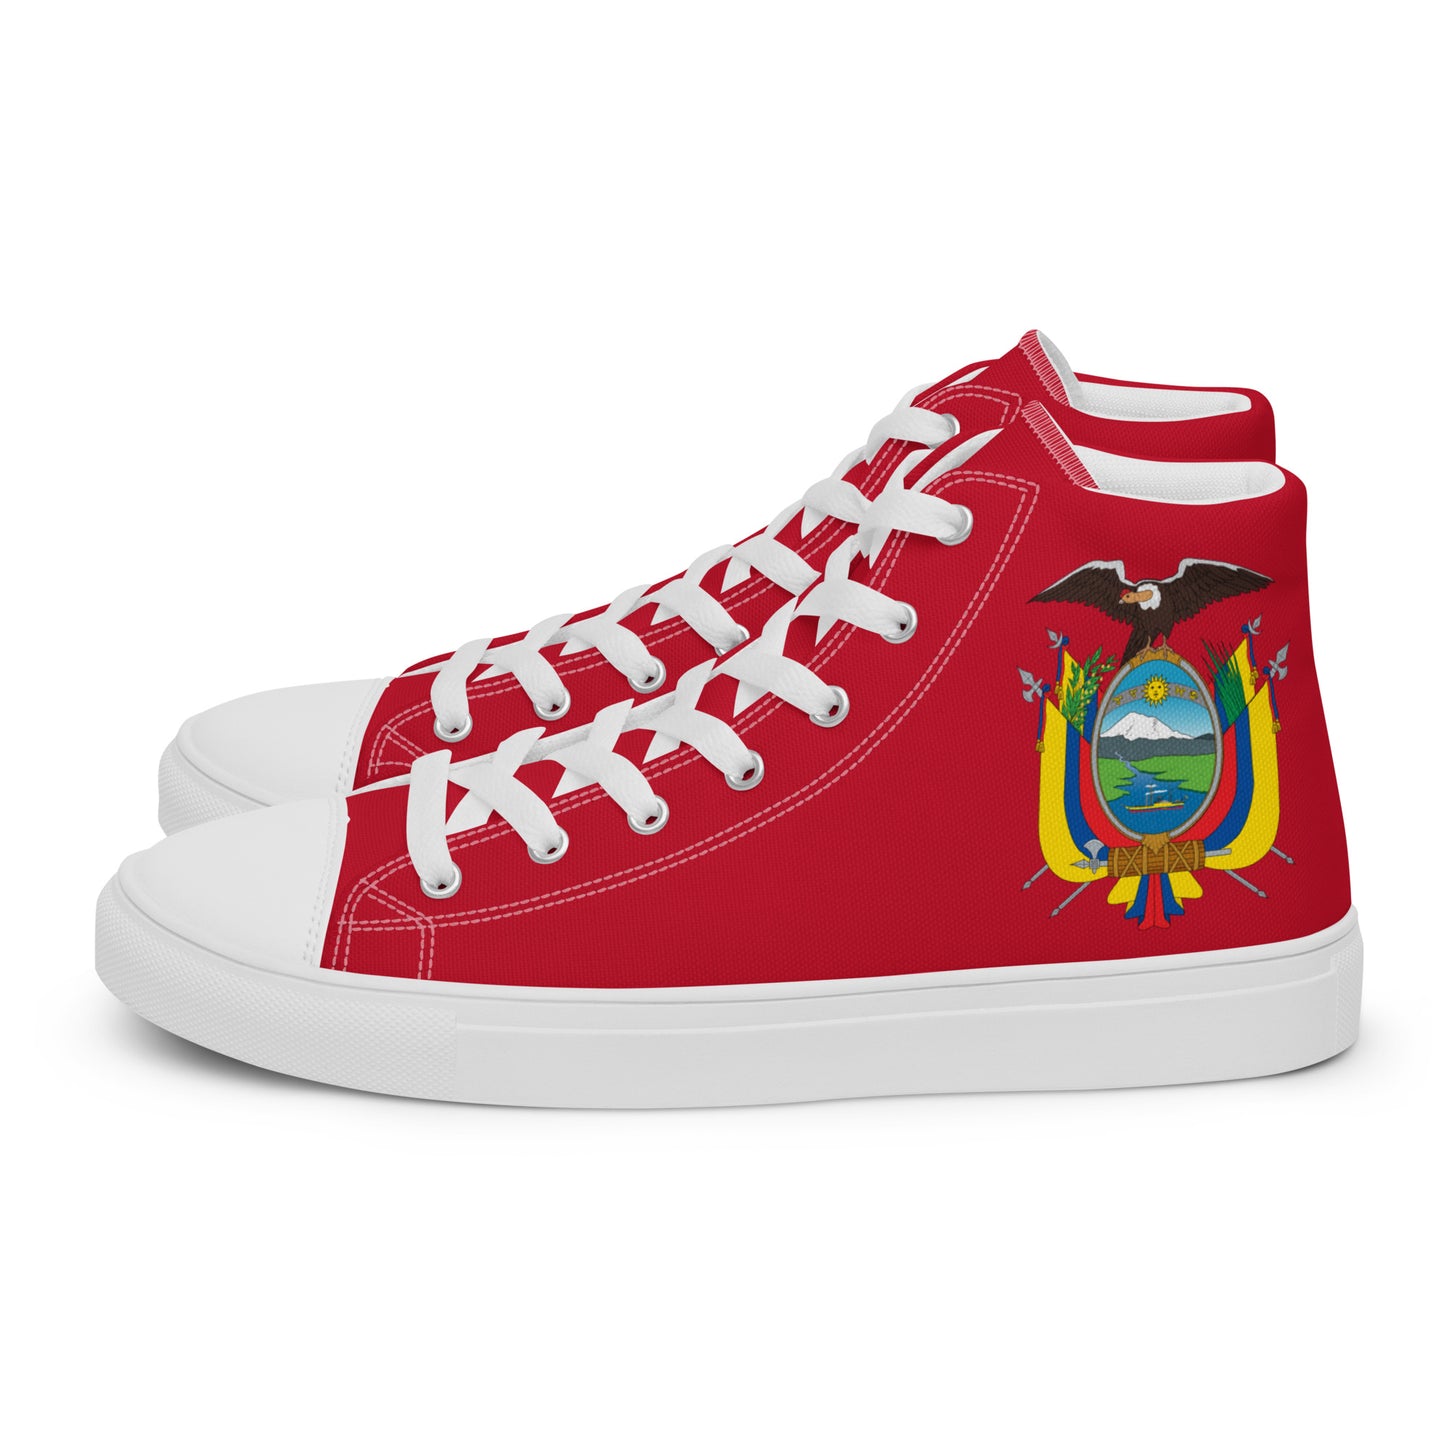 Ecuador - Women - Red - High top shoes